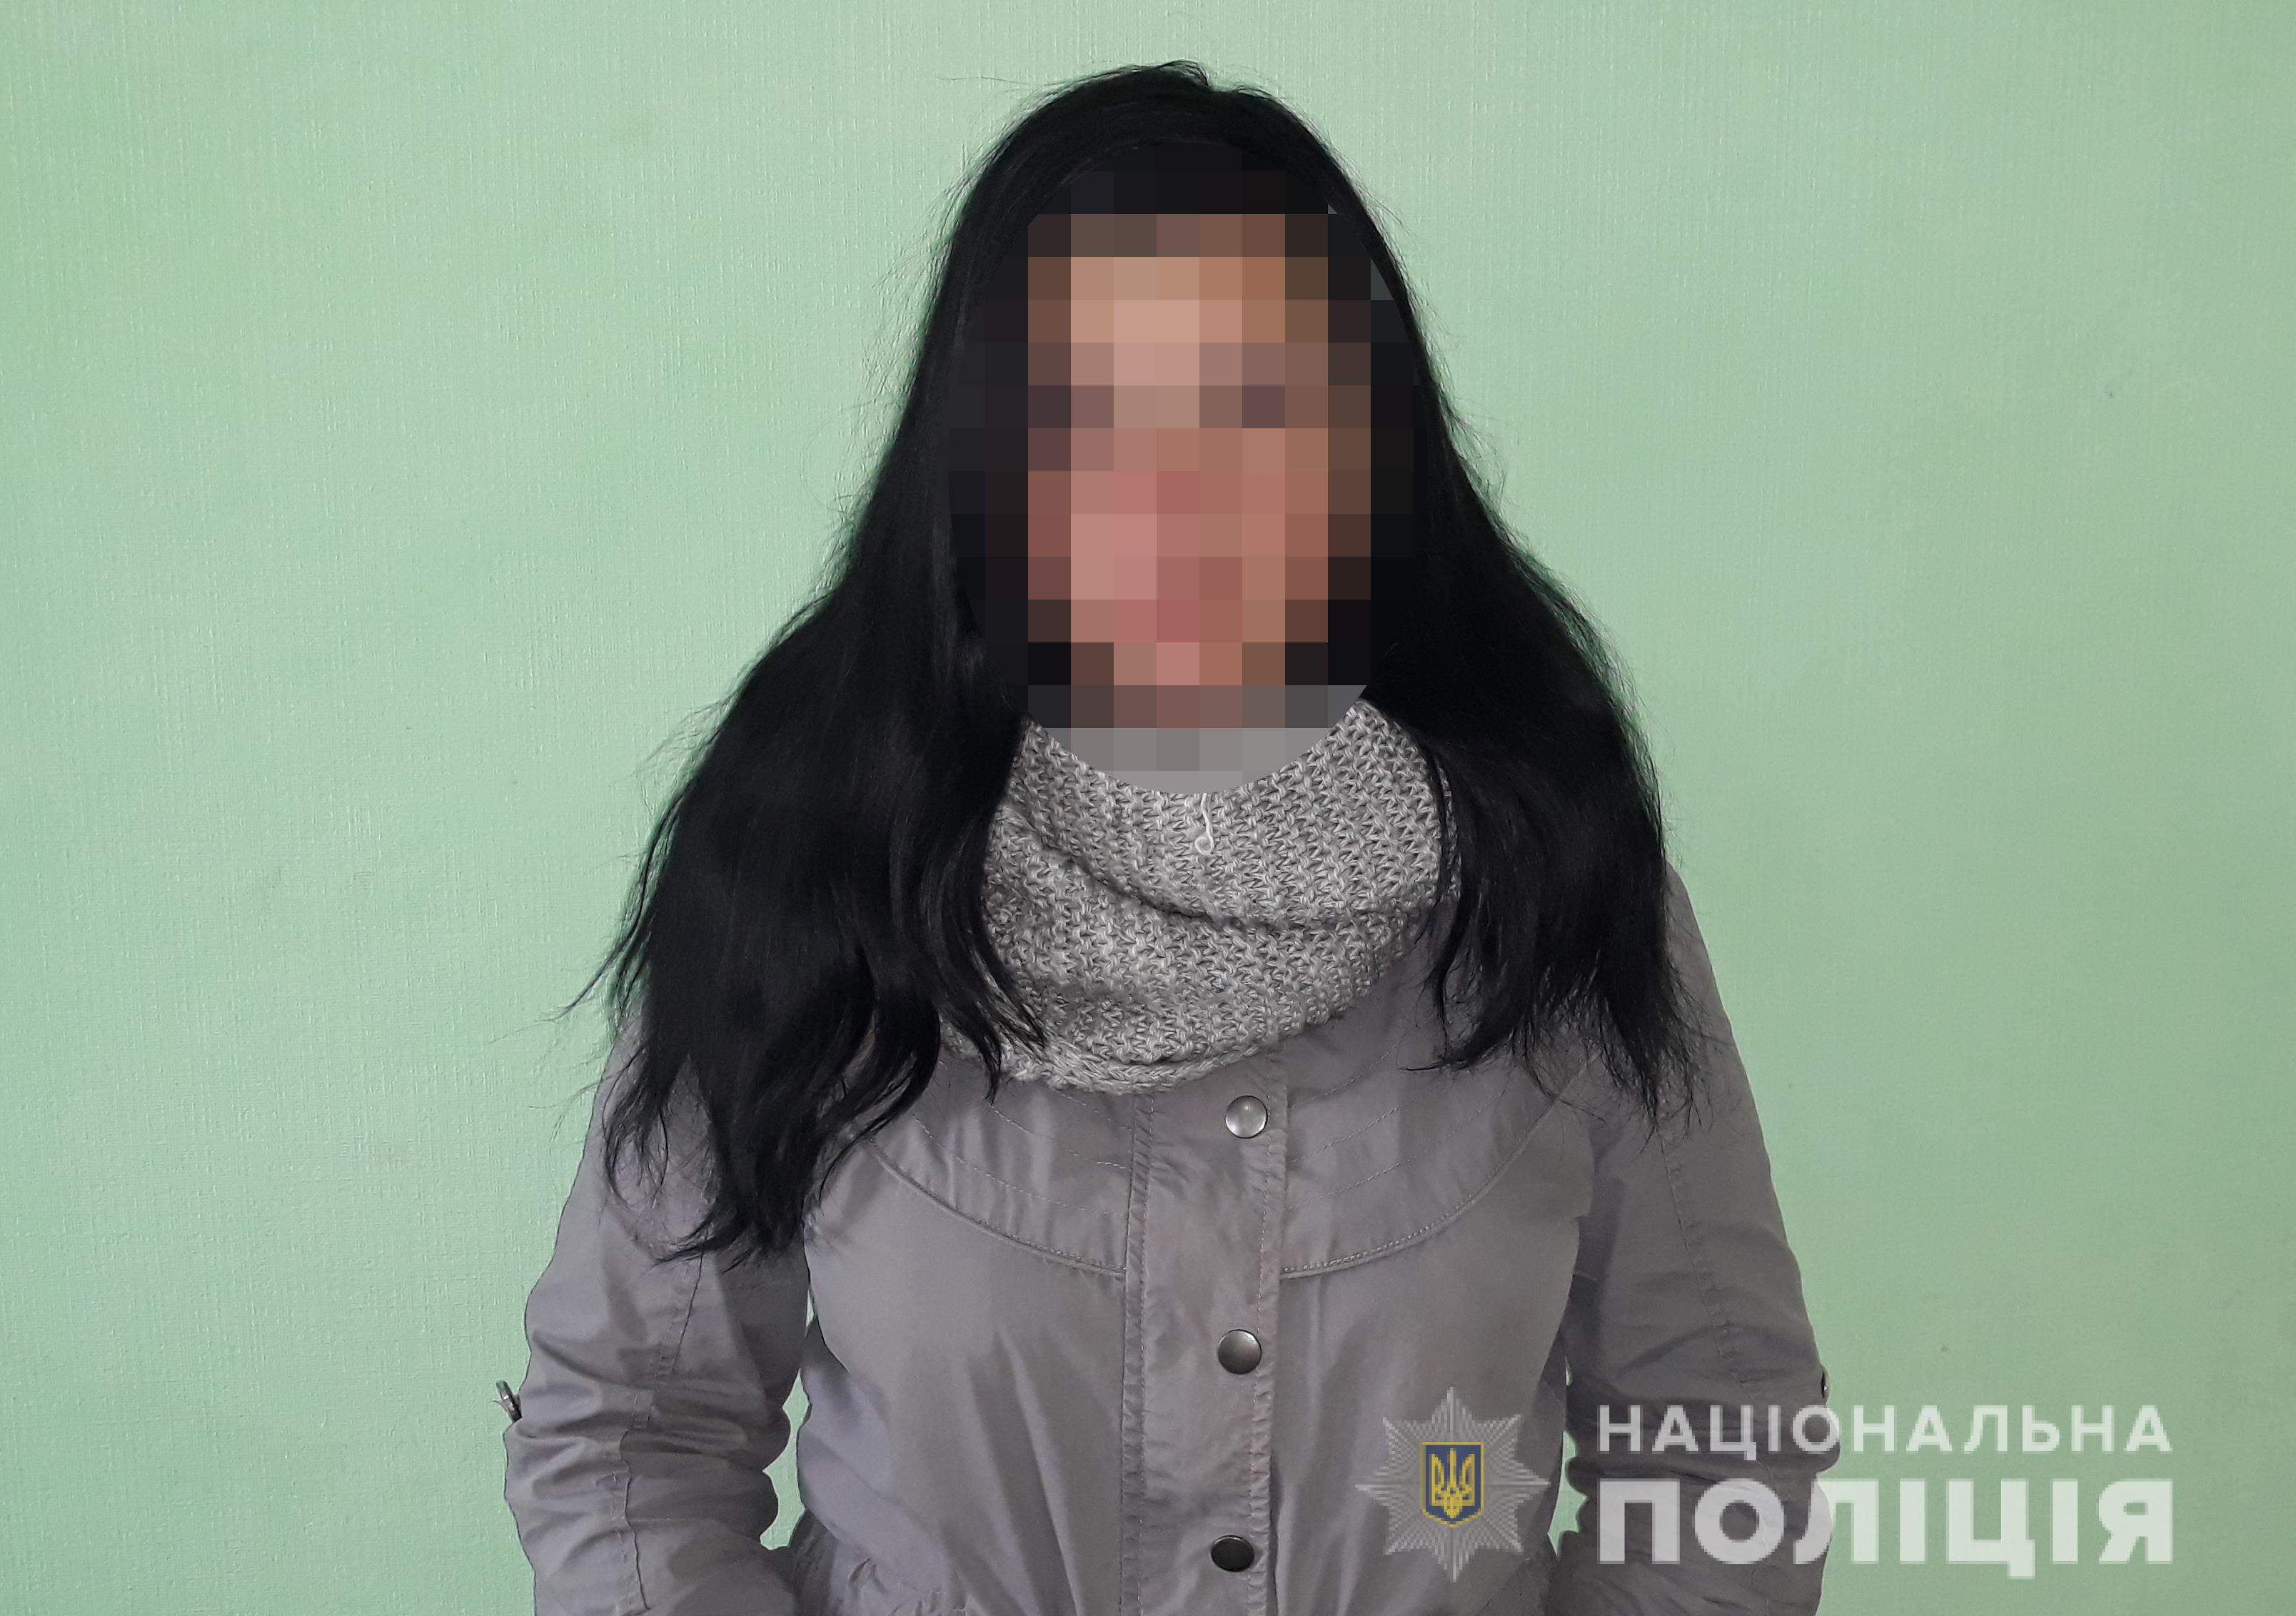 У Запорізькій області знайшли зниклу неповнолітню дівчину